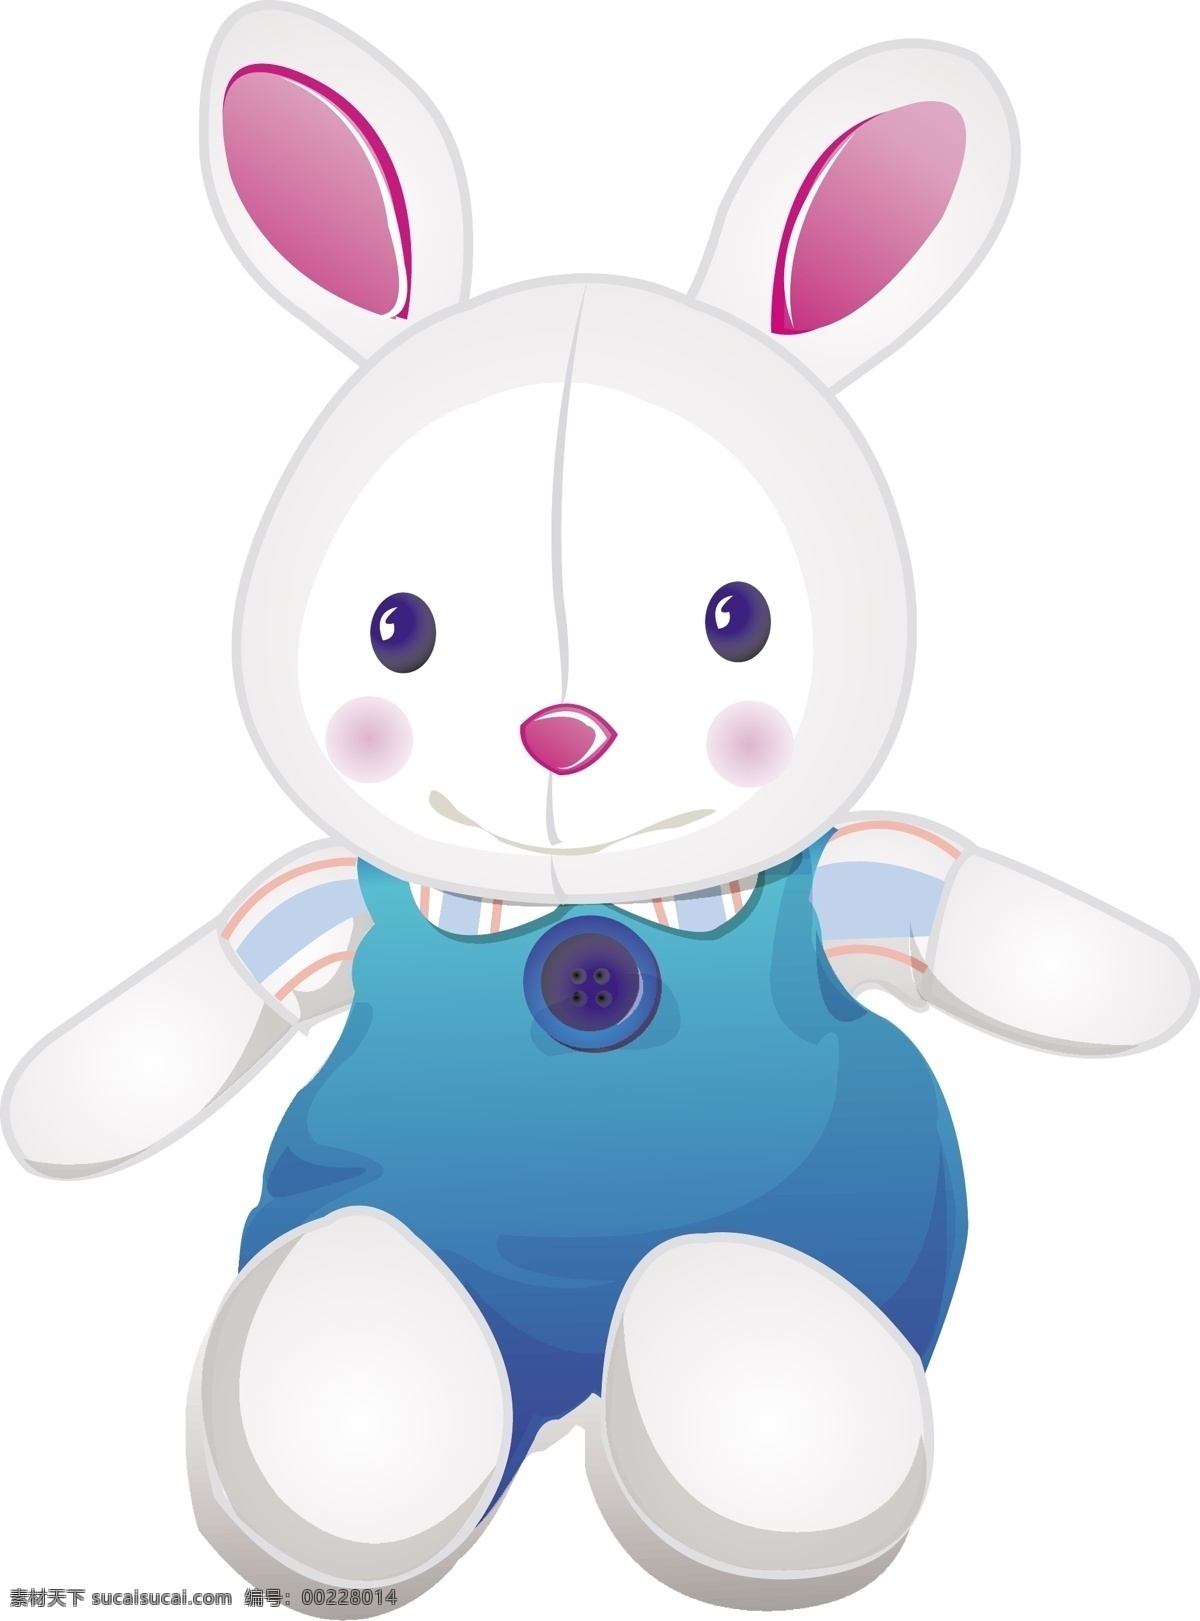 玩具 兔子 生活百科 生活用品 矢量图 矢量图库 矢量 模板下载 玩具兔子 生活用品矢量 psd源文件